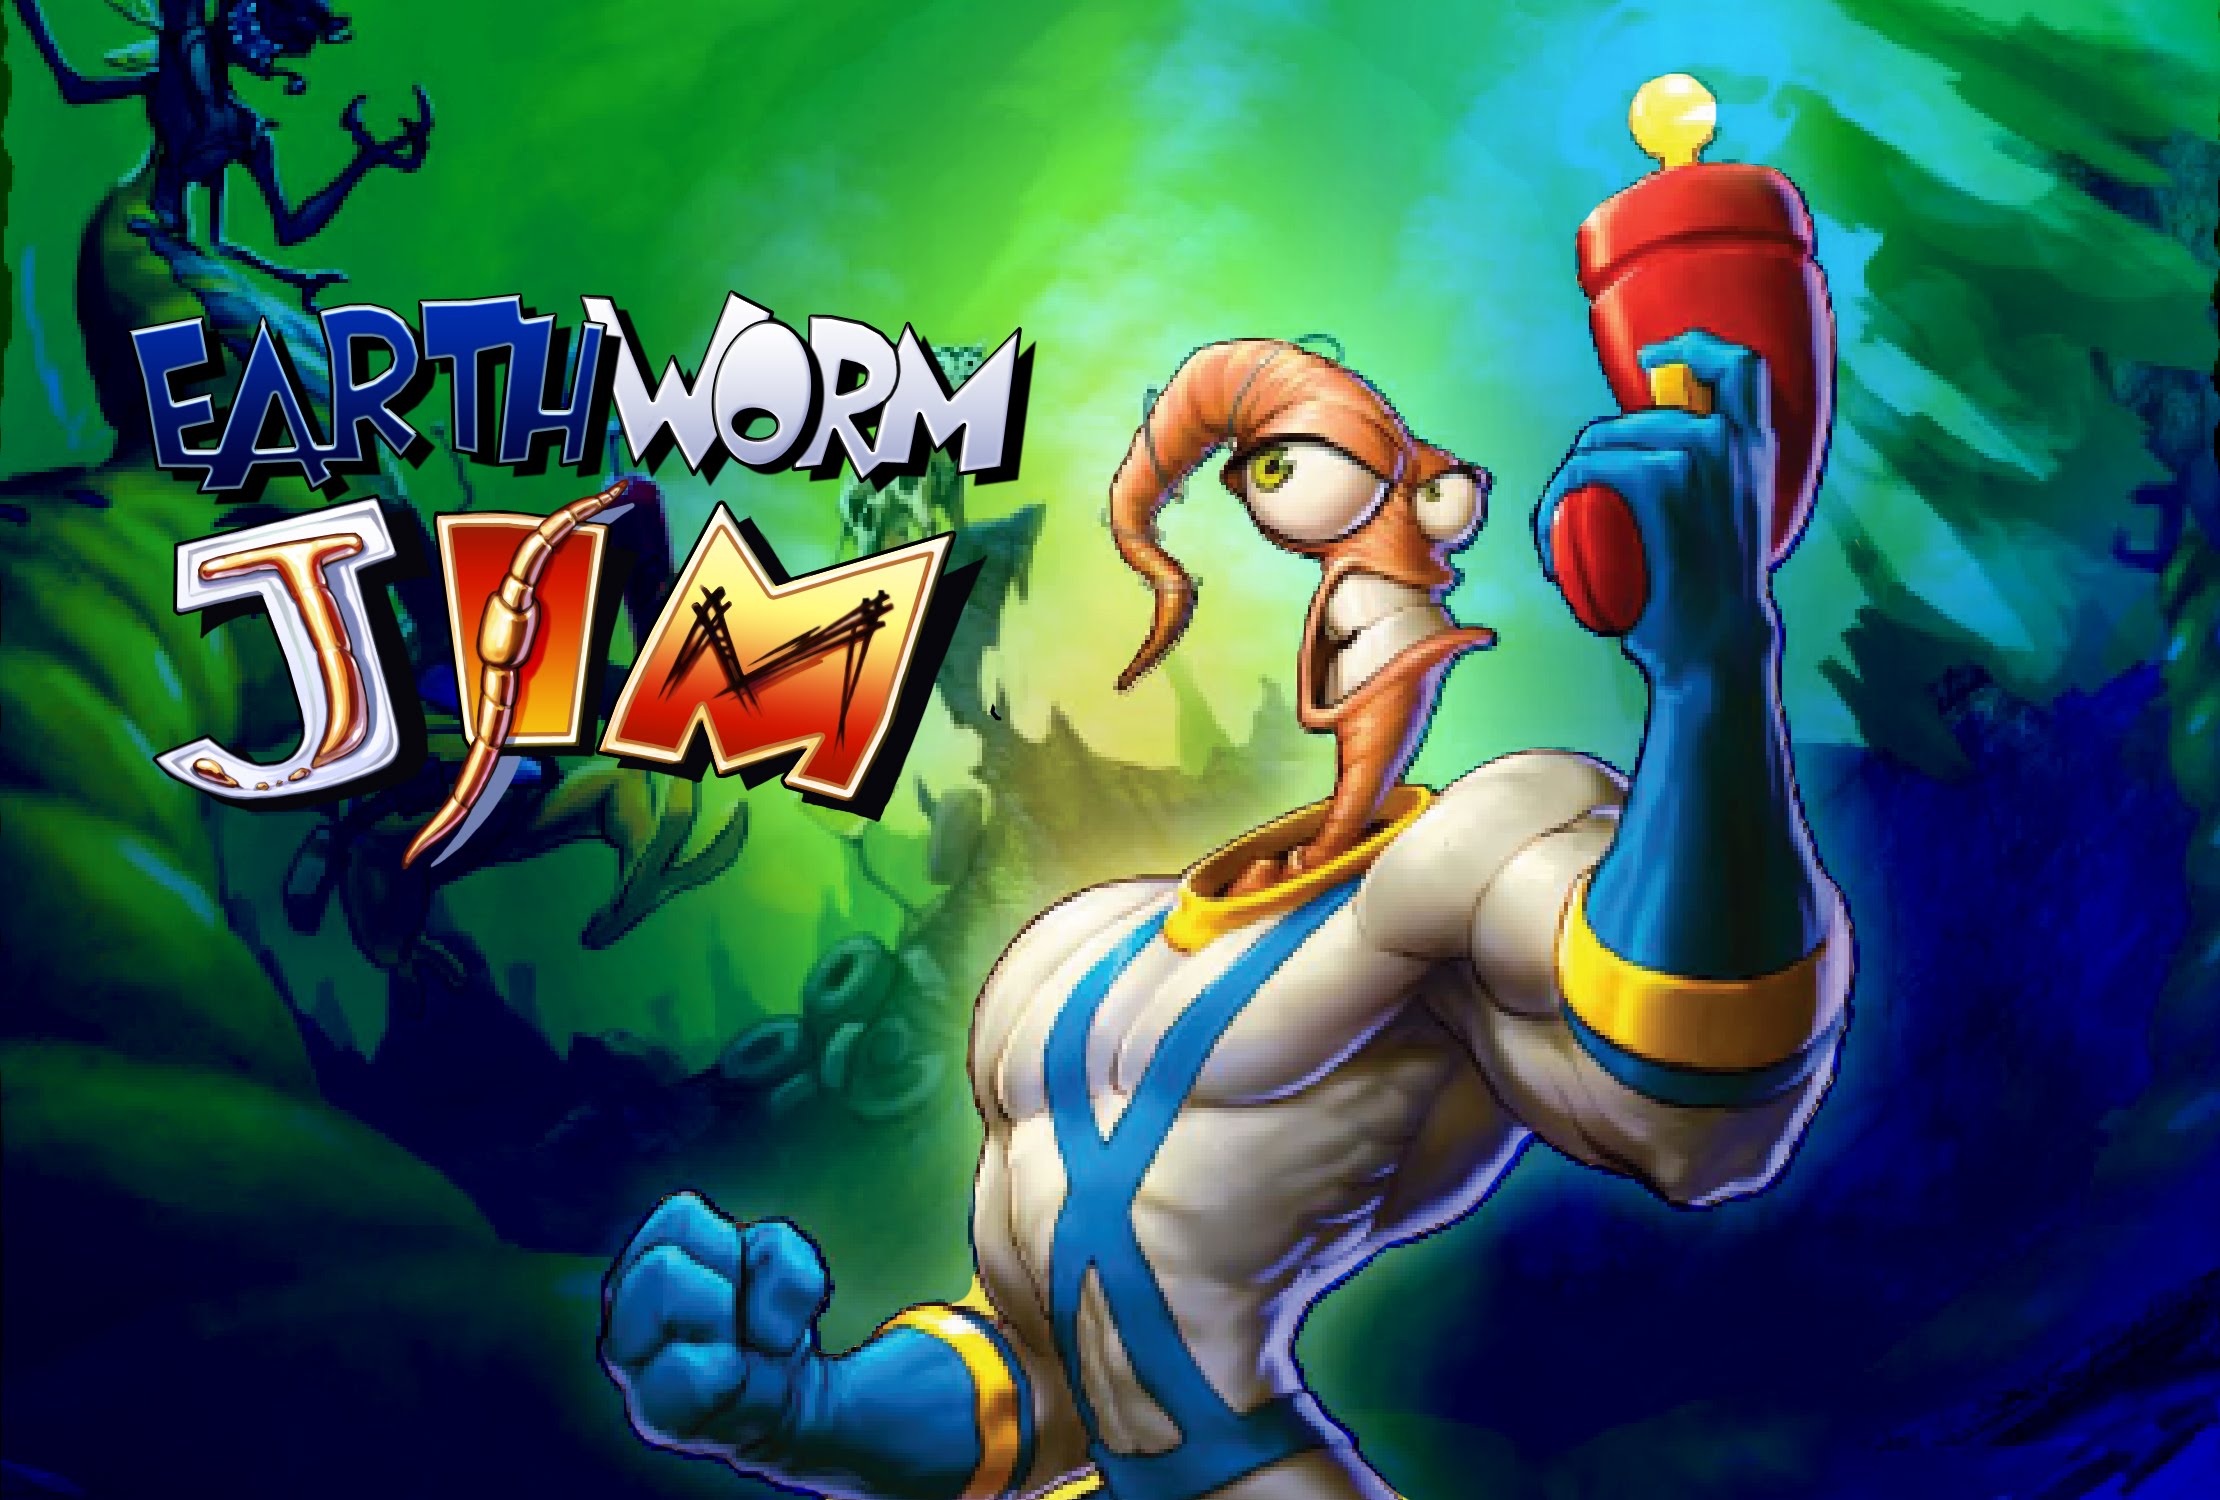 Earthworm Jim #21